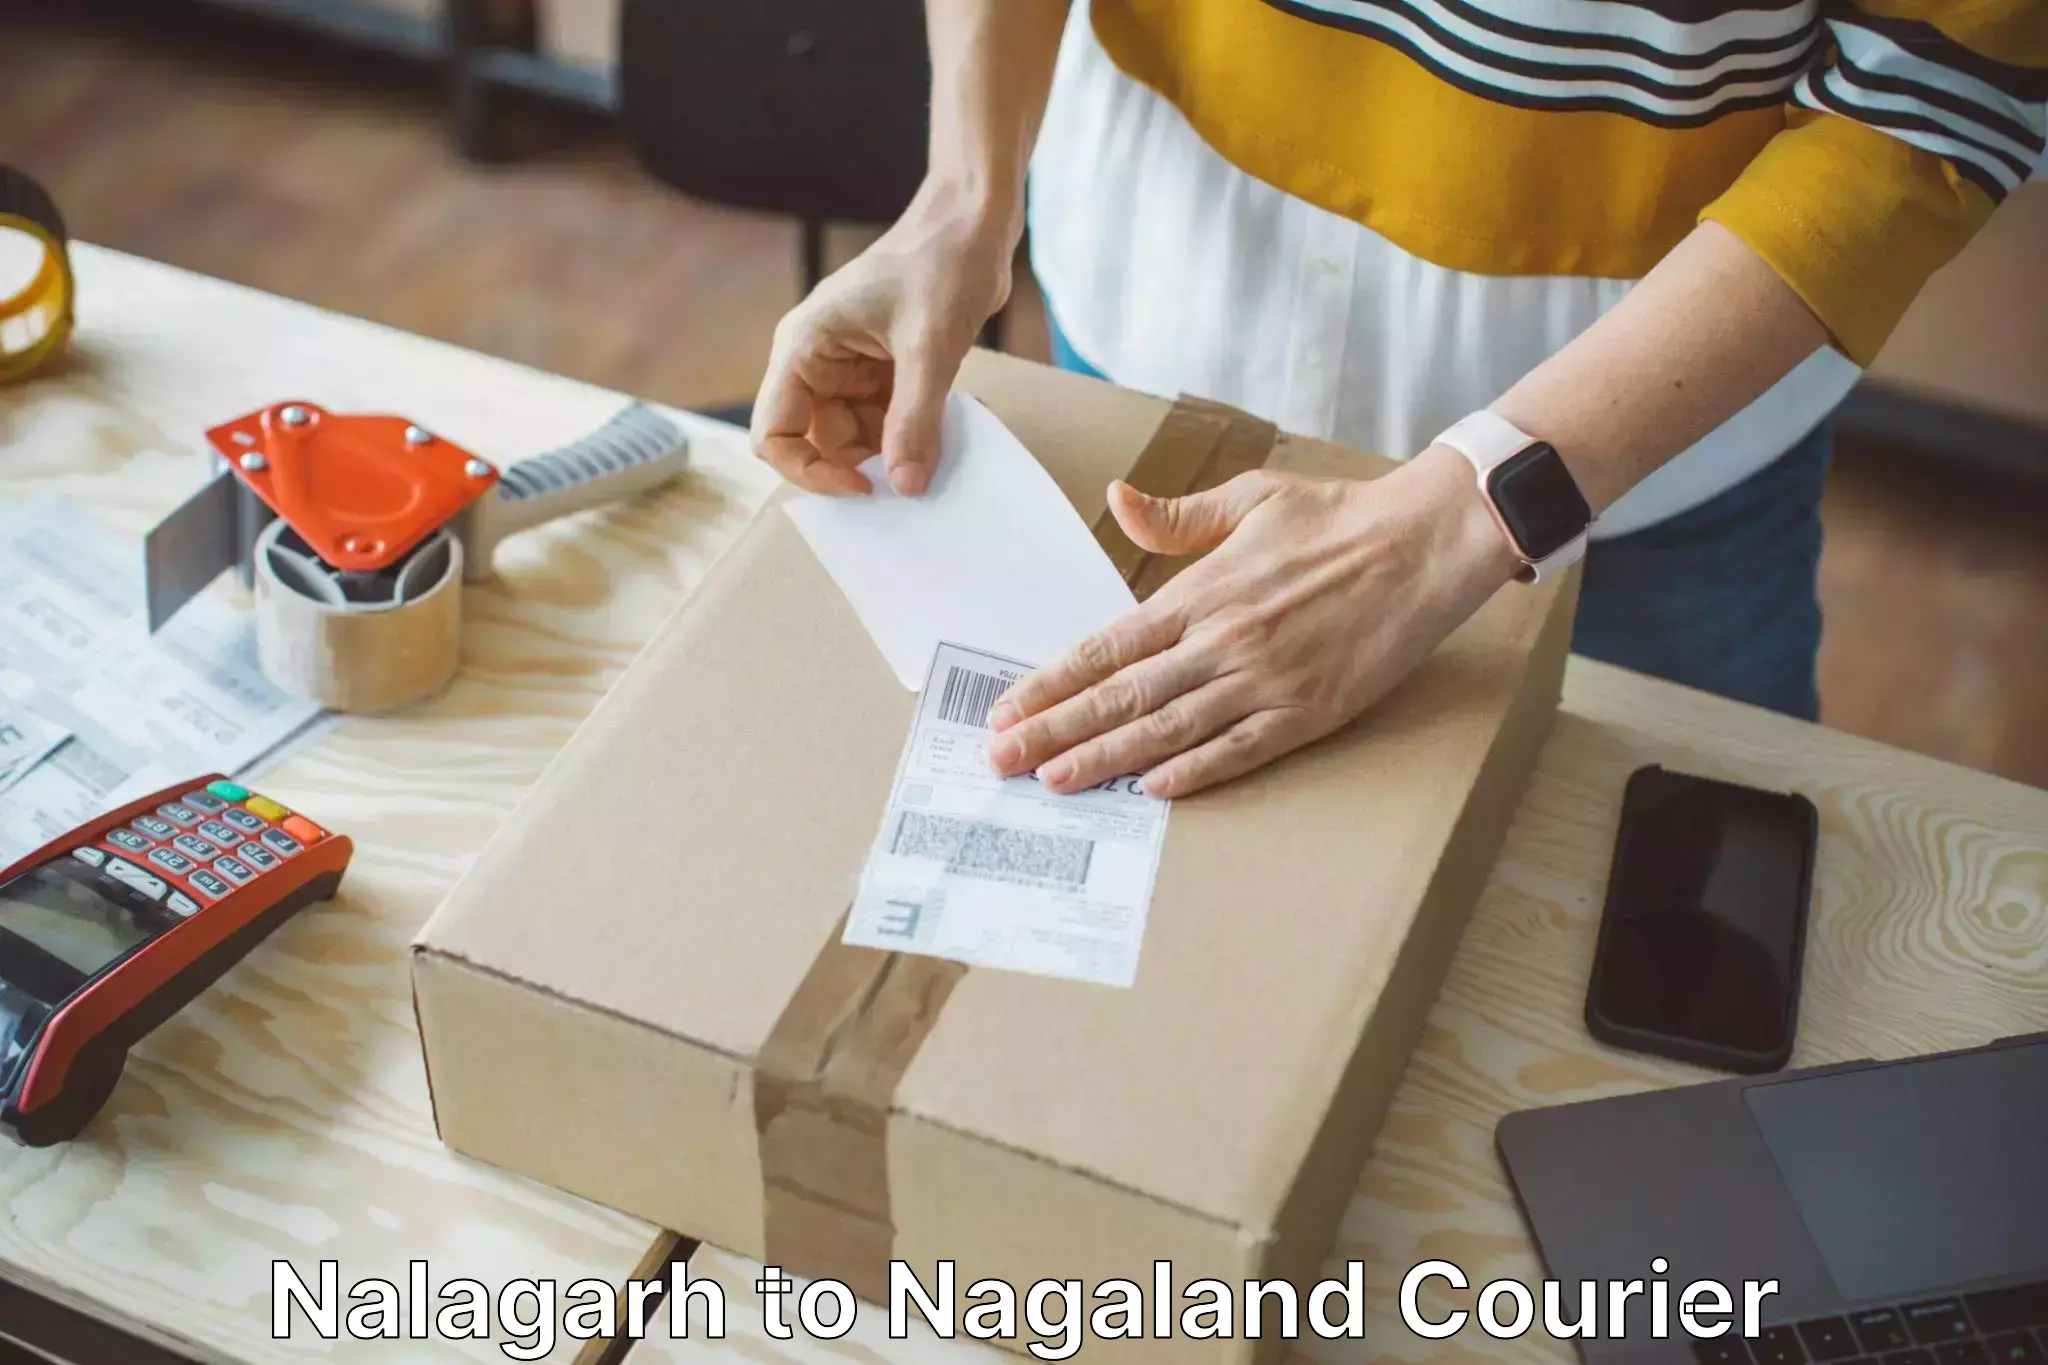 Personal effects shipping Nalagarh to Tuensang